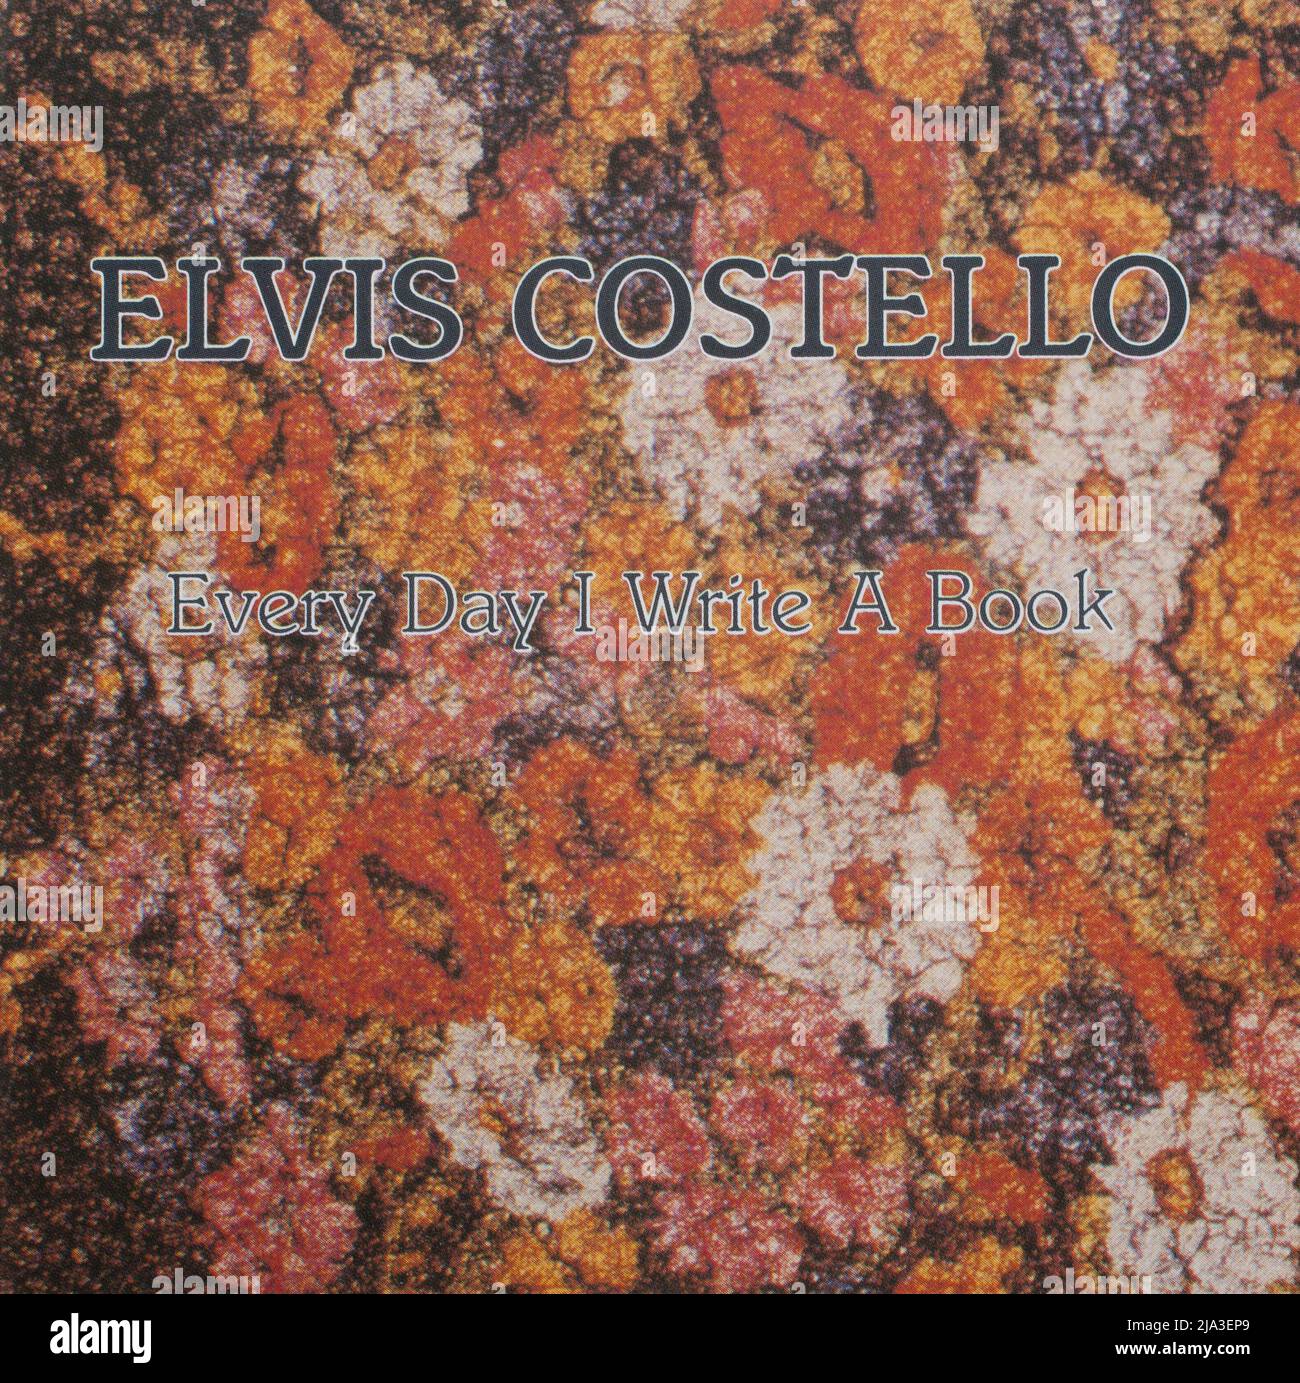 La portada del álbum de cd a, Cada día Escribe un Libro de Elvis Costello Foto de stock